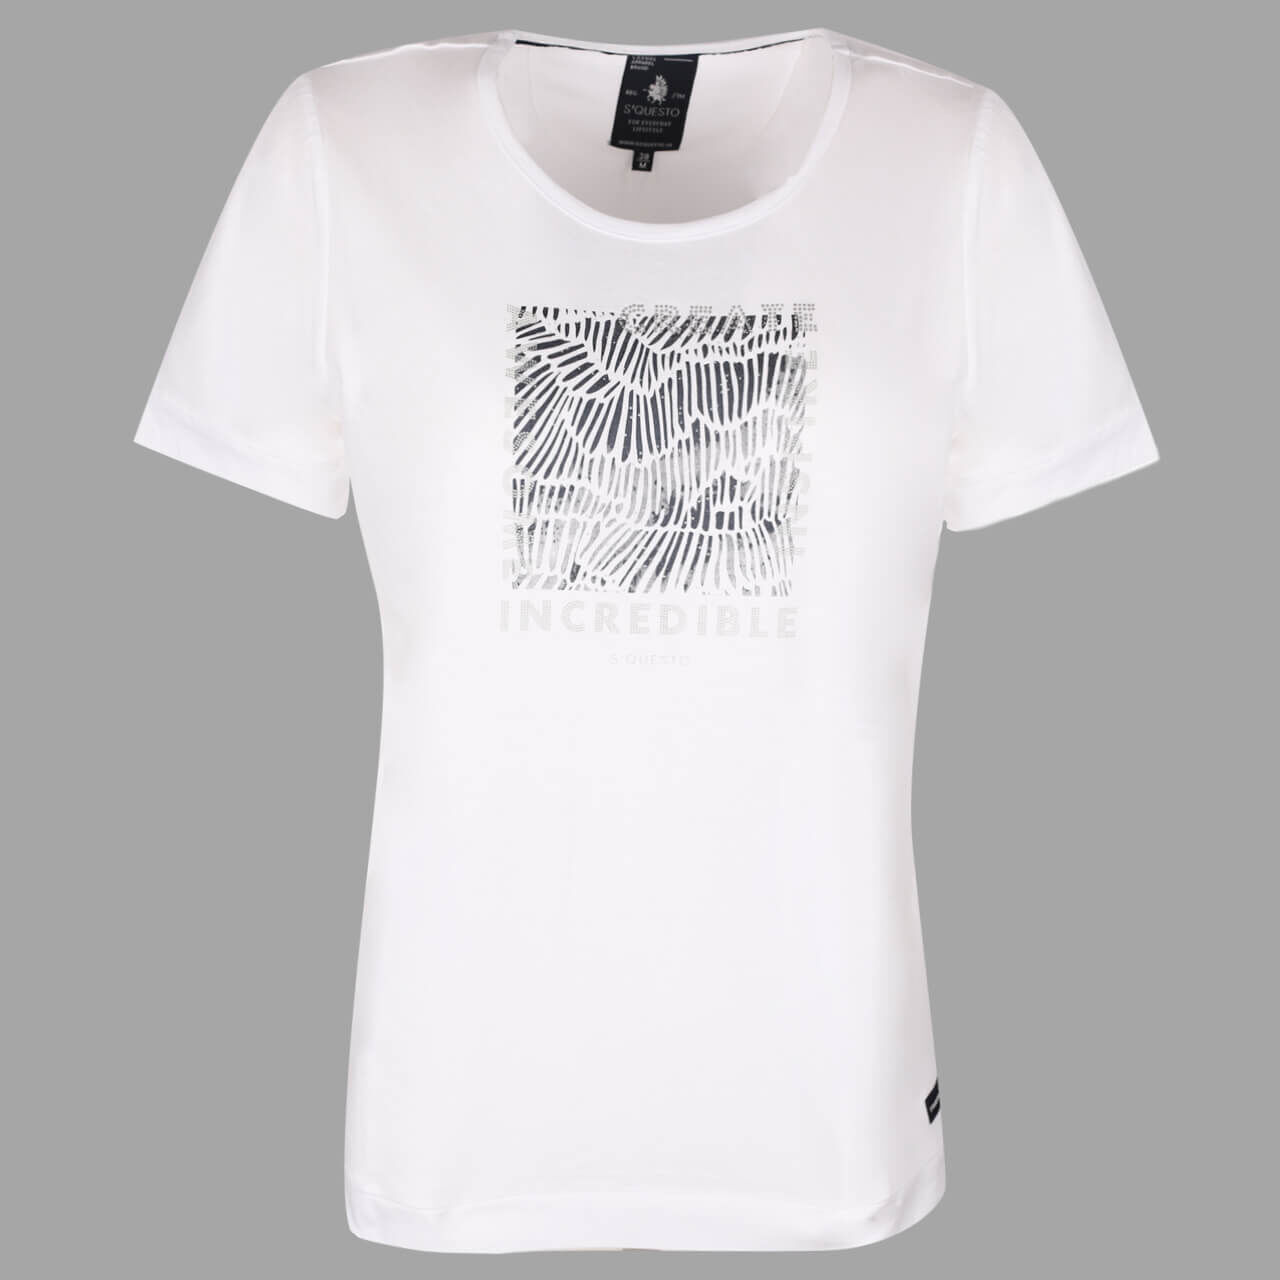 Soquesto Damen T-Shirt white with print